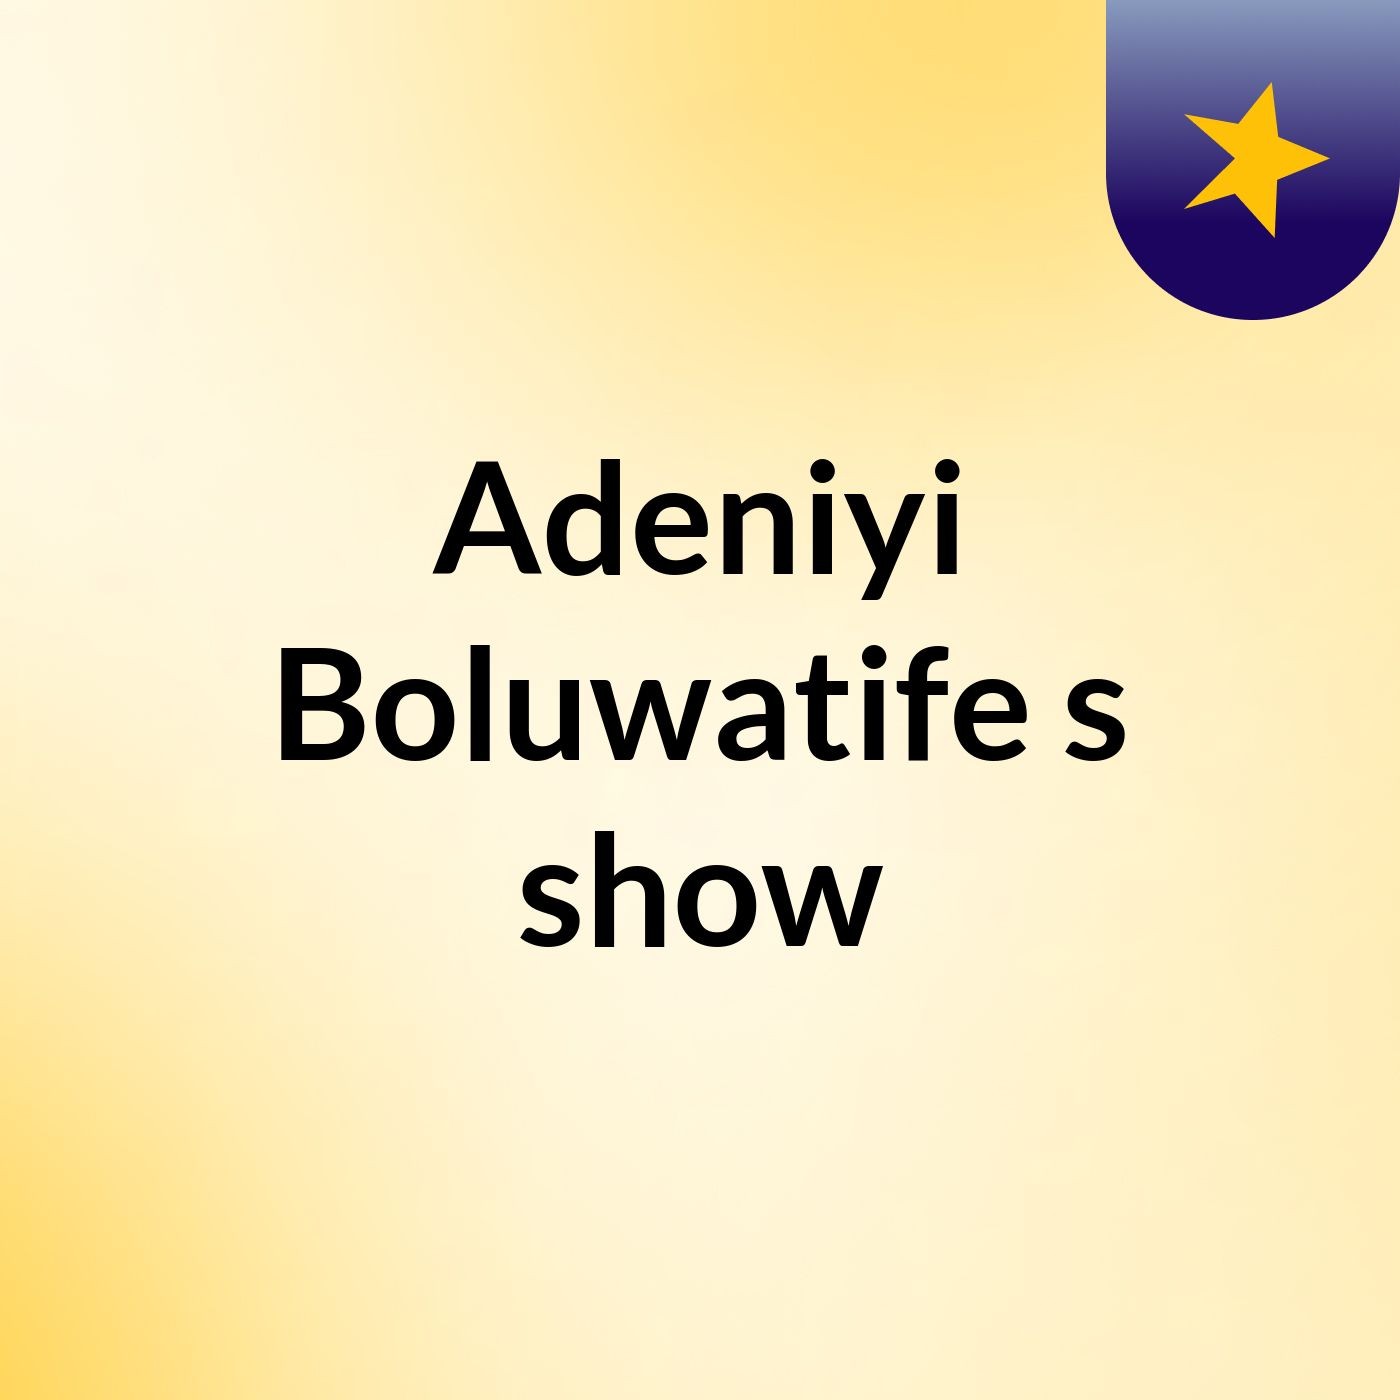 Episode 4 - Adeniyi Boluwatife's show